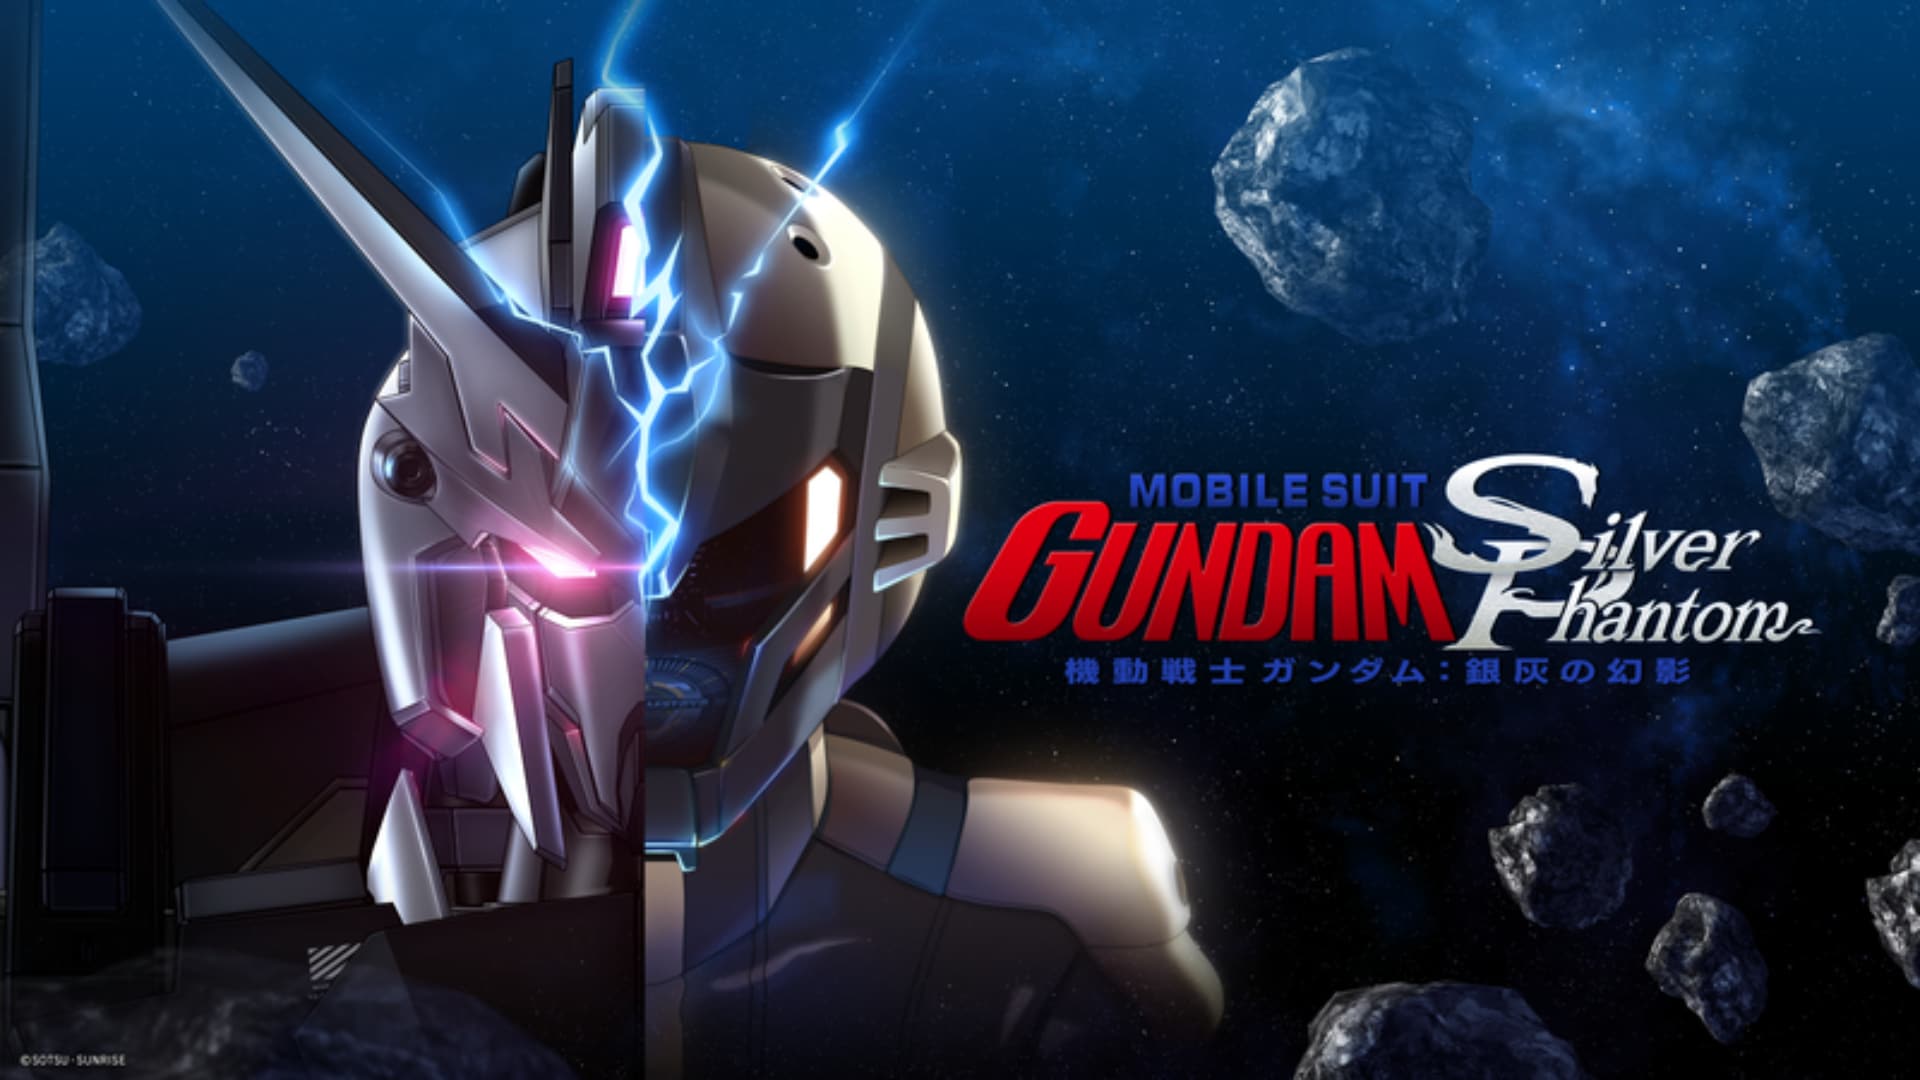 Mobile Suit Gundam Gümüş Phantom